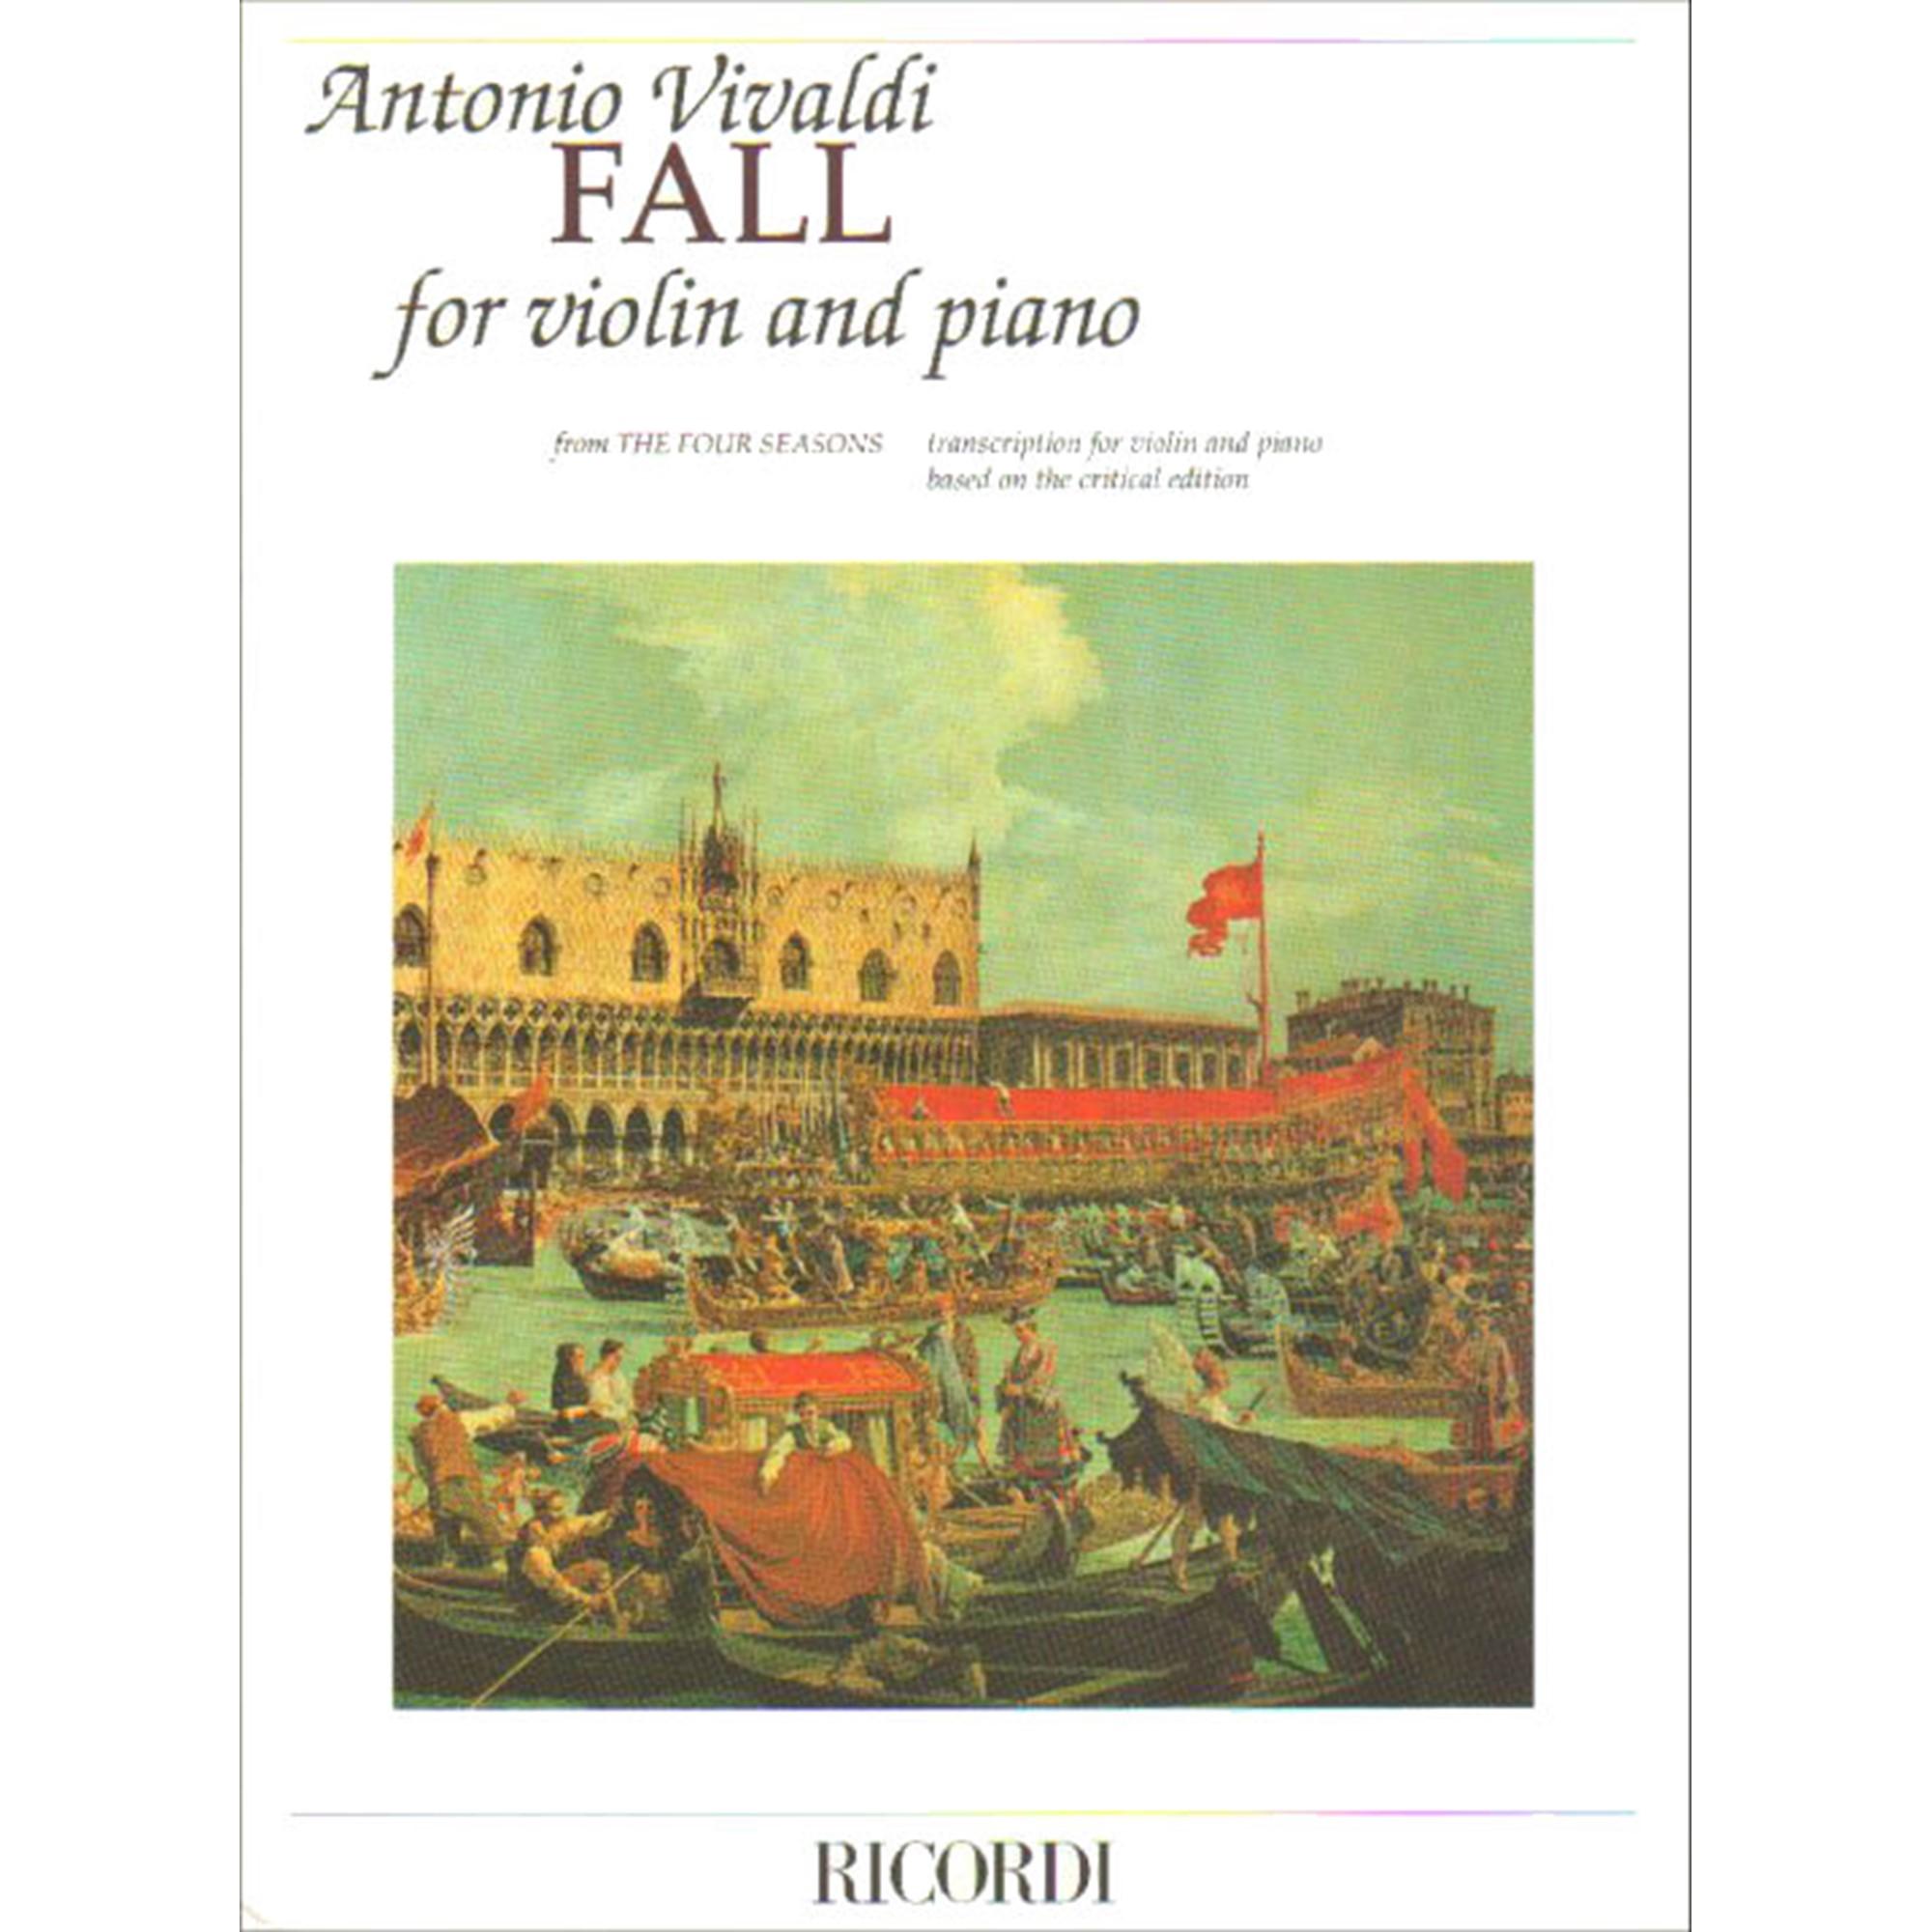 Vivaldi FALL for Violin and piano - Ricordi